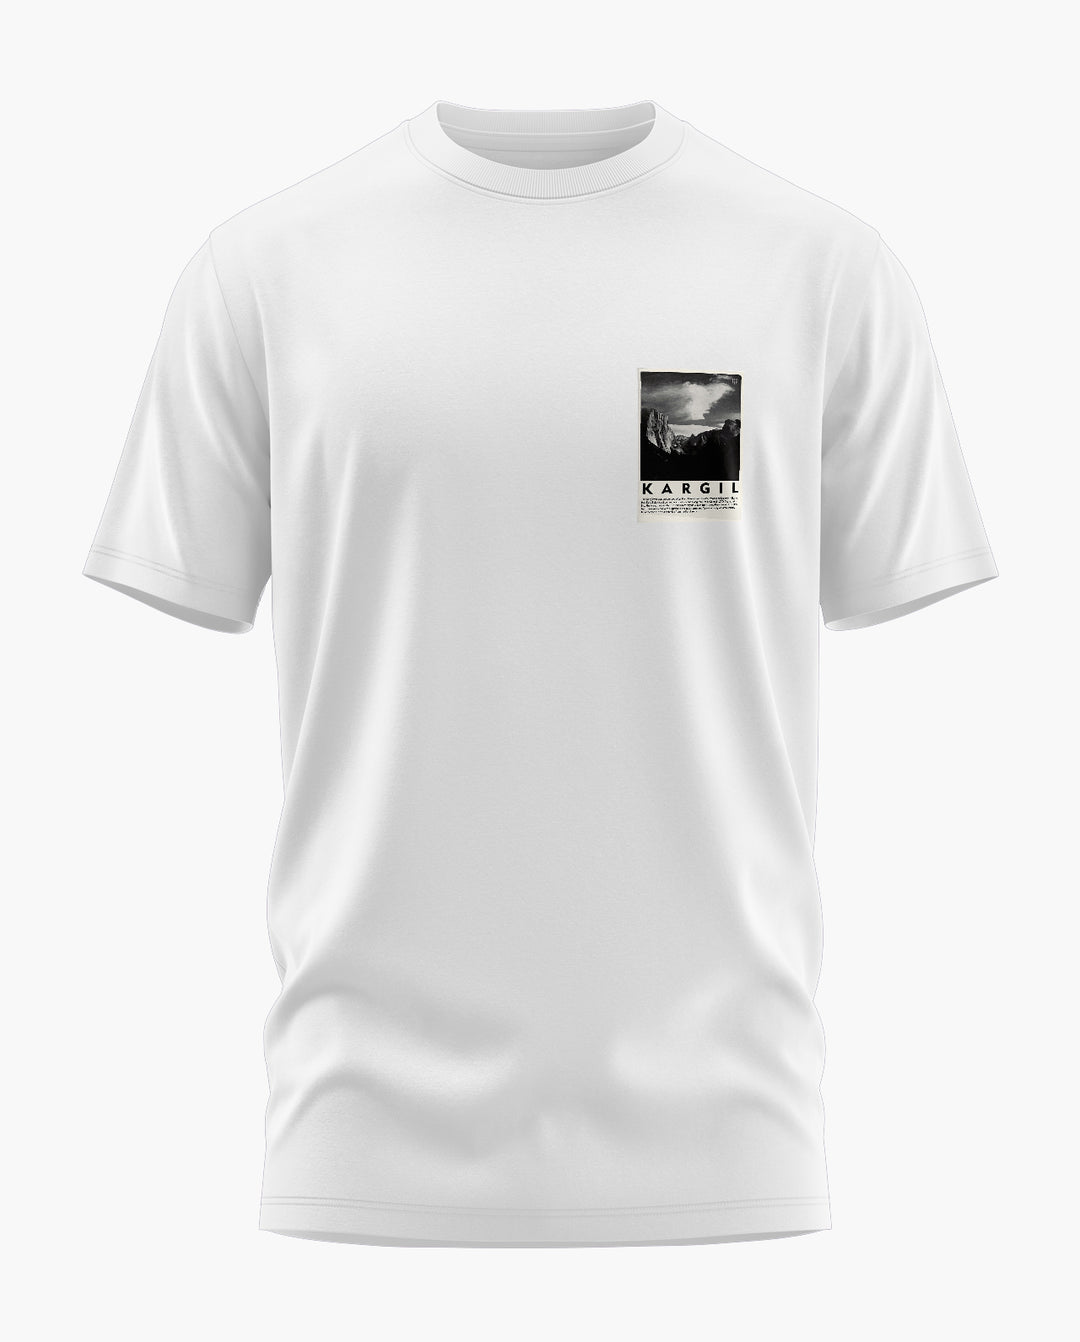 KARGIL KEEP POCKET T-Shirt